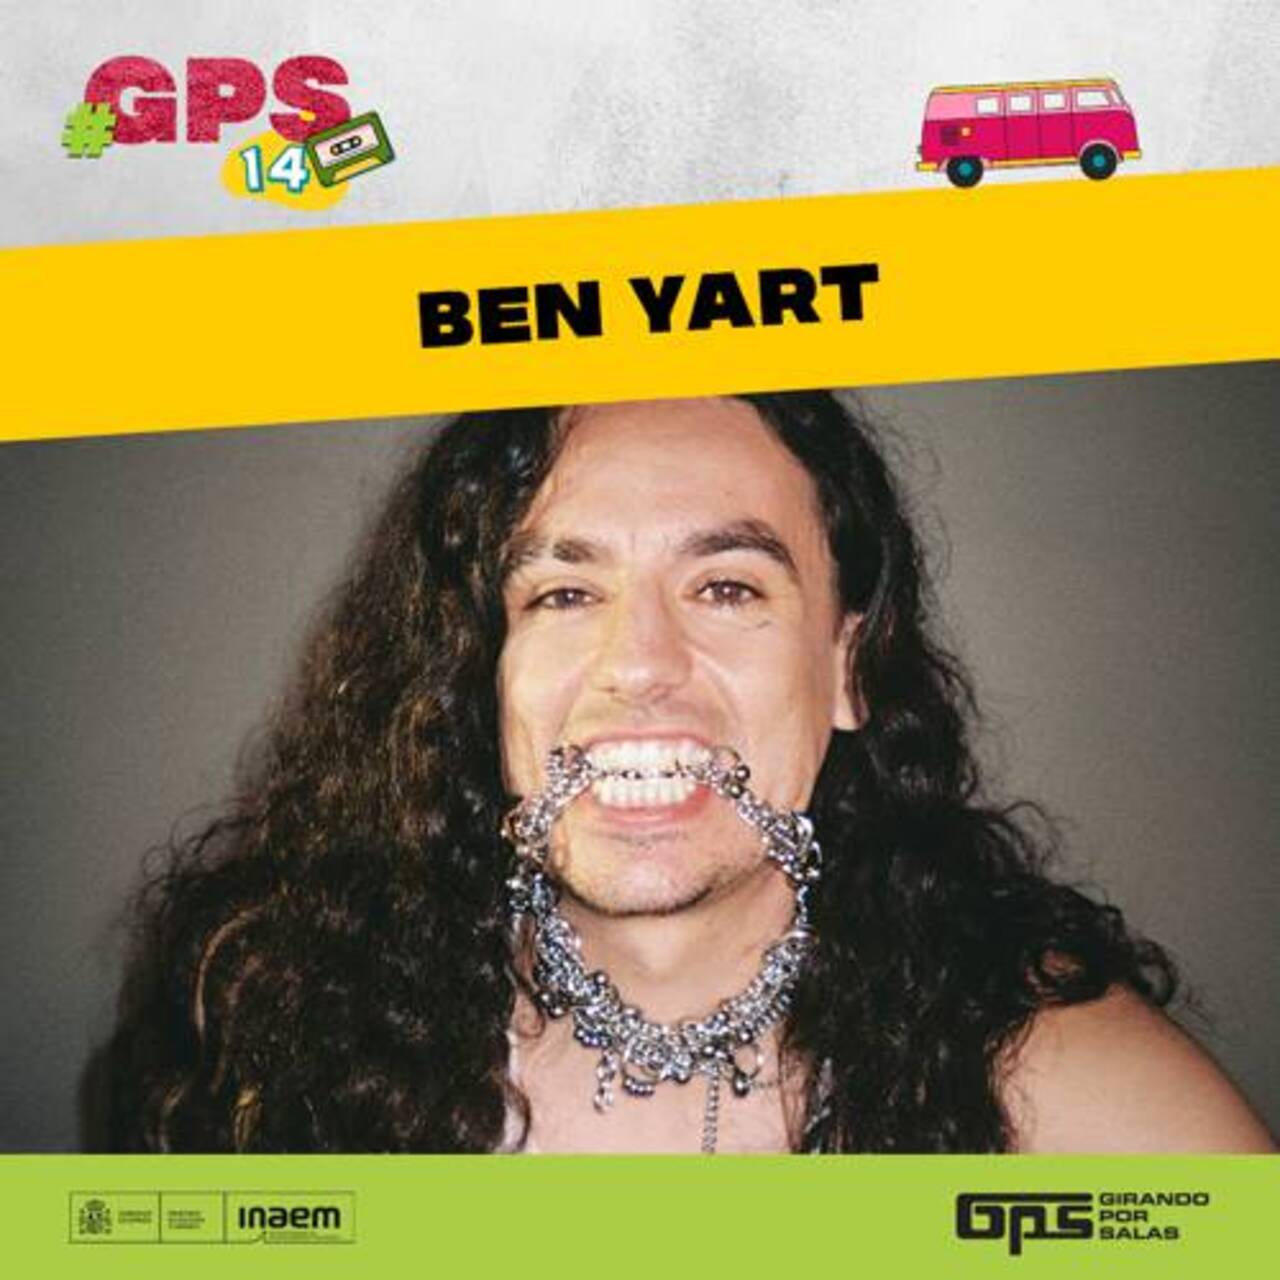 GPS presenta a Ben Yart en concierto